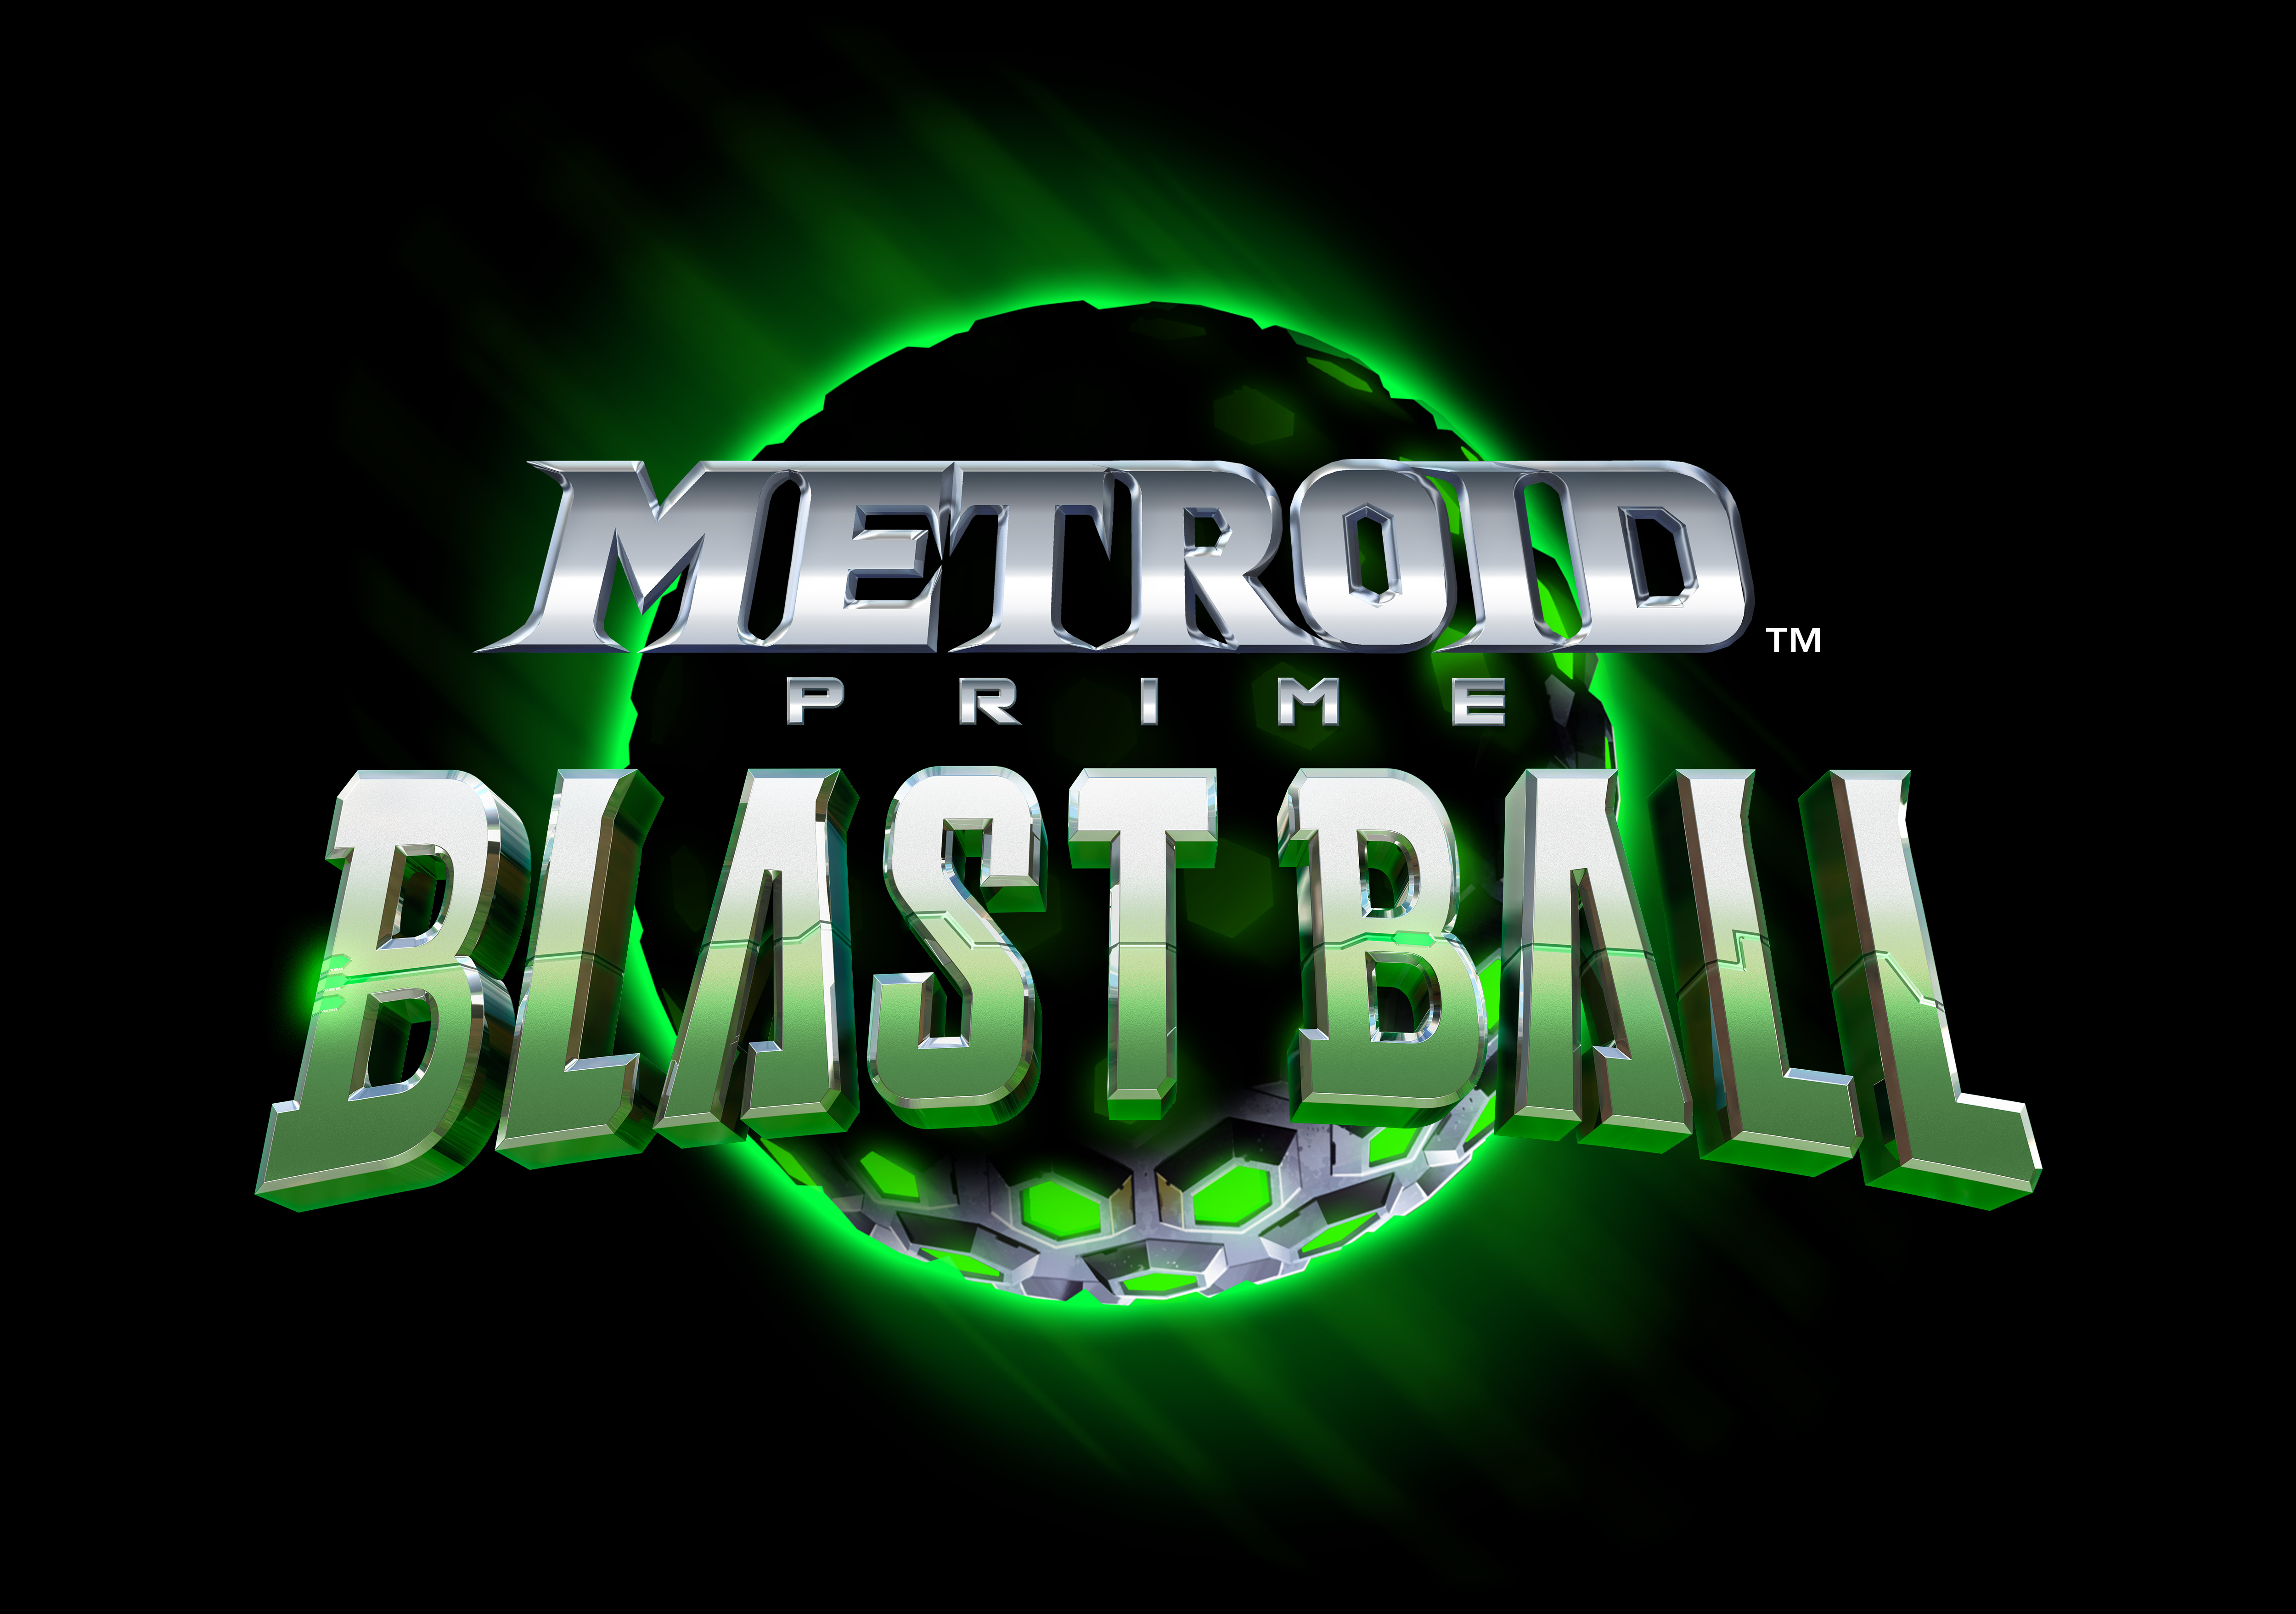 Metroid Prime: Blast Ball | Wikitroid 